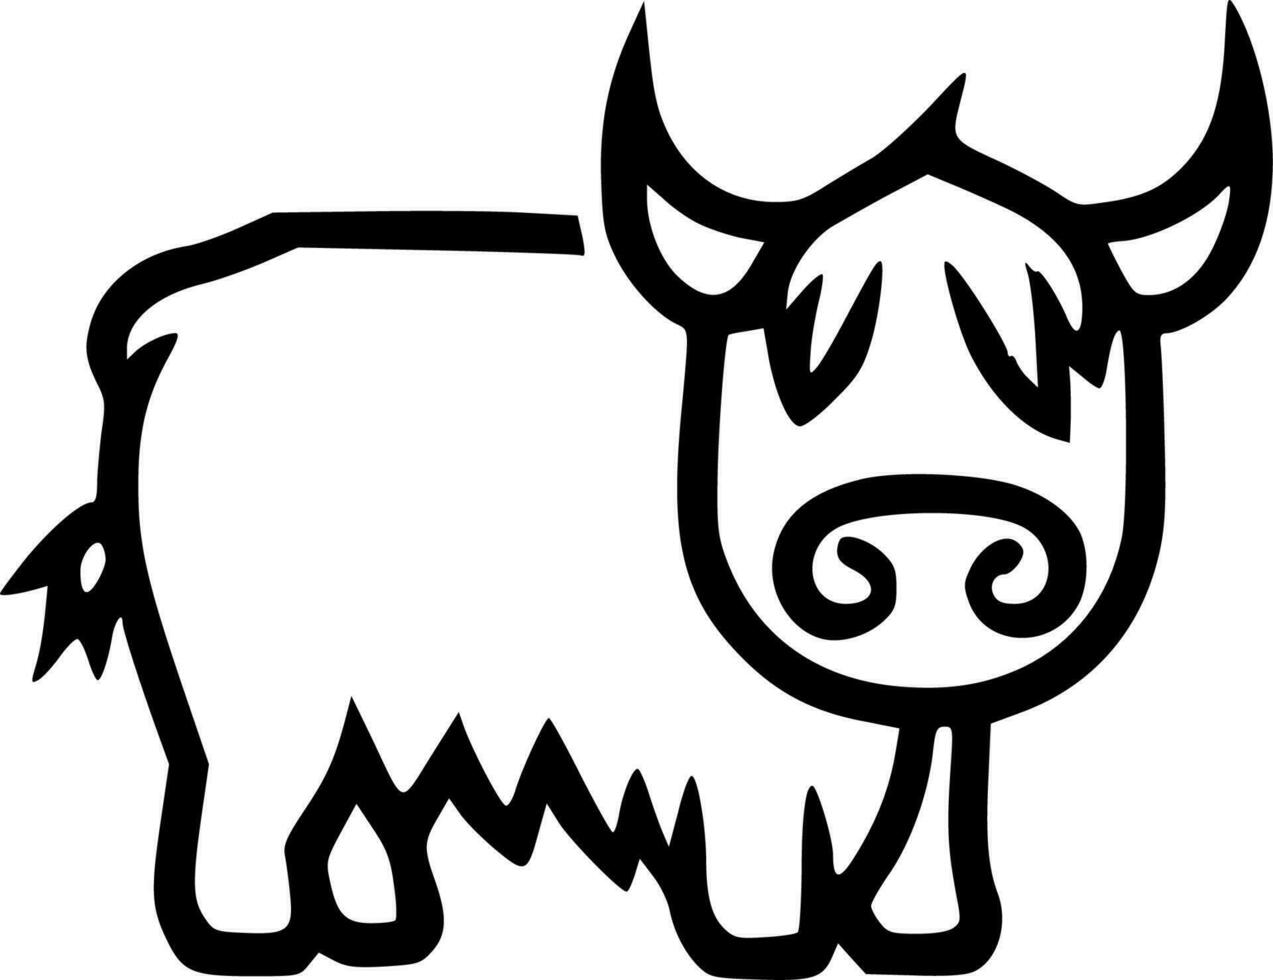 Hochland Kuh - - minimalistisch und eben Logo - - Vektor Illustration